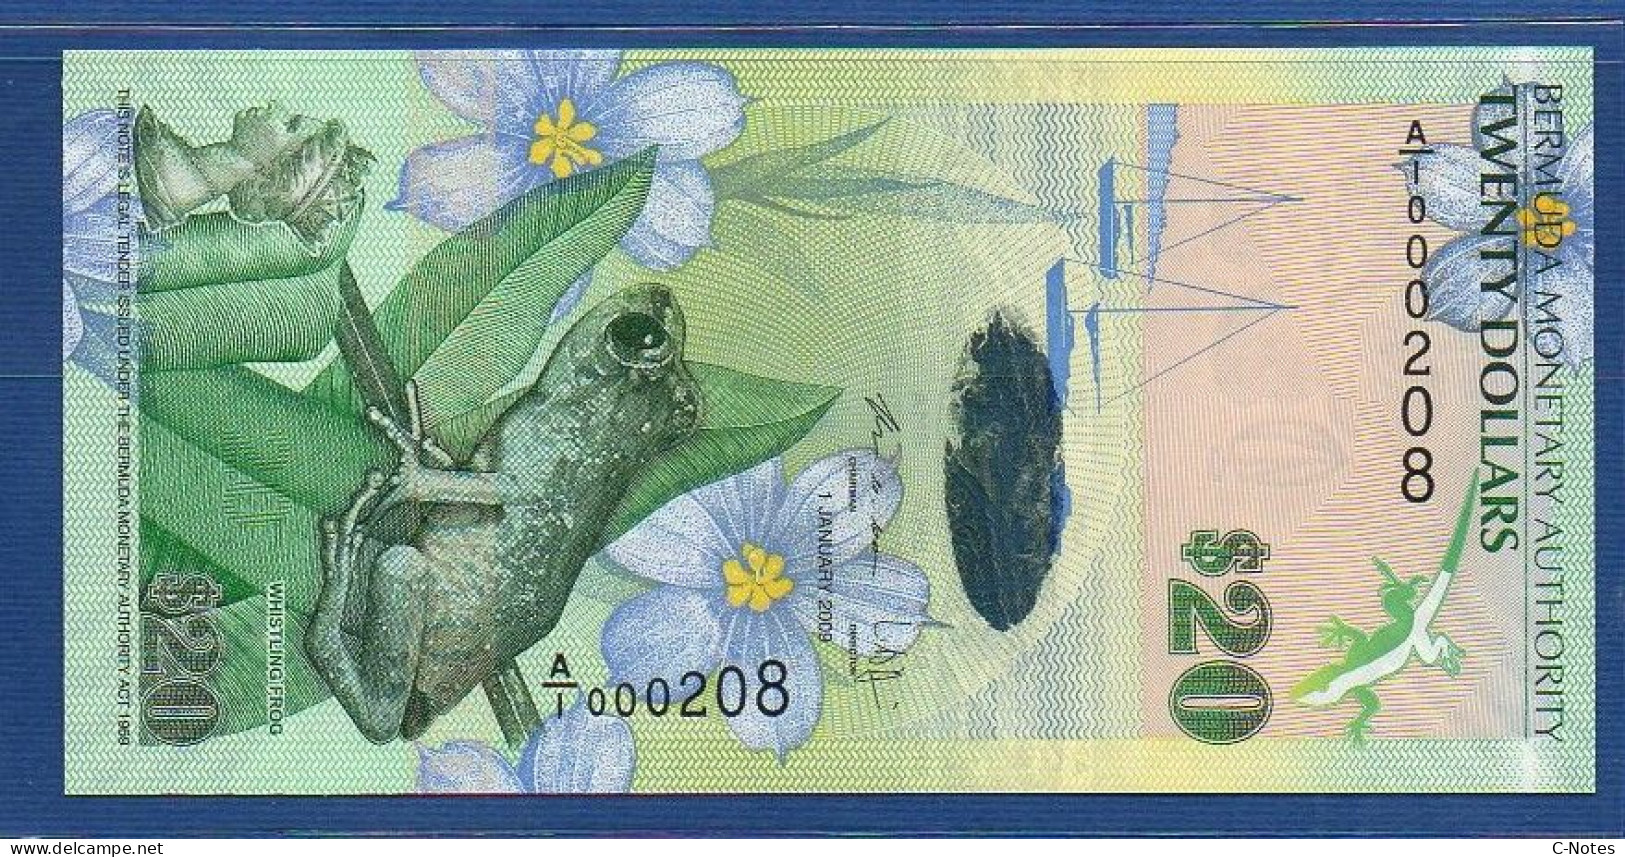 BERMUDA - P.60b1 – 20 Dollars 2009 UNC, S/n A/1 000208 LOW NUMBER - Bermudas